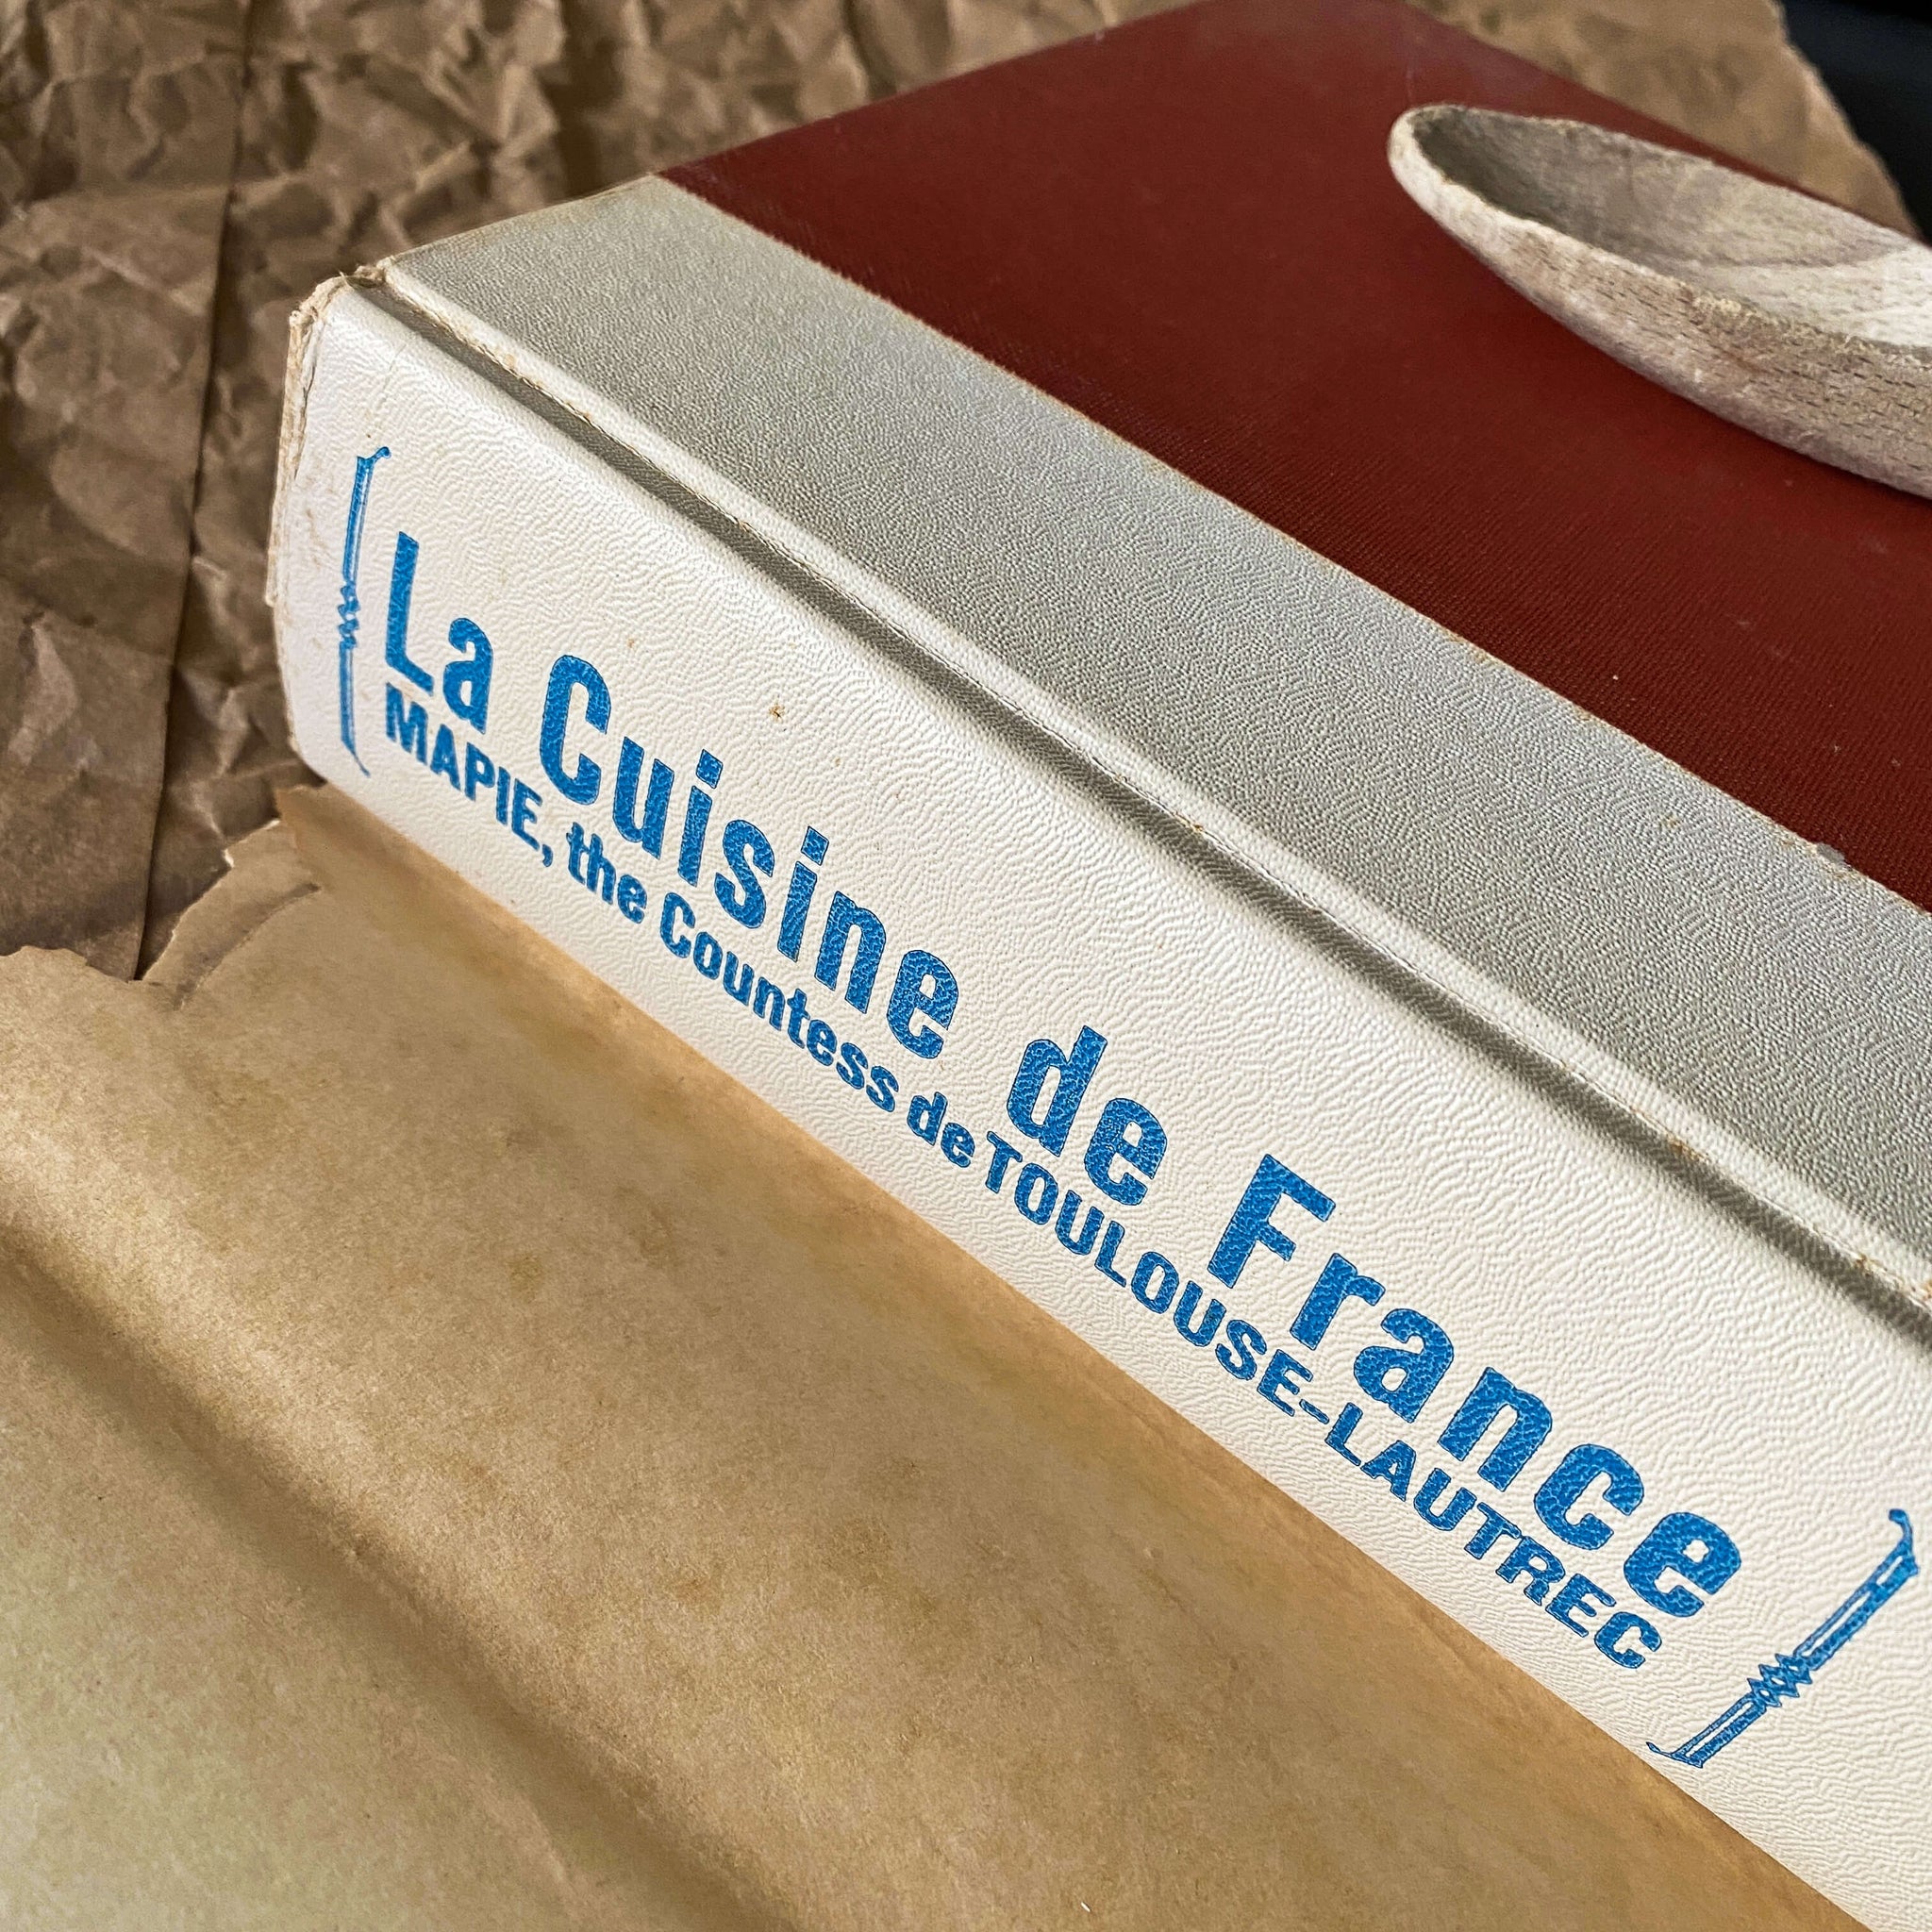 La Cuisine de France - Mapie Countess de Toulouse-Lautrec - 1964 Book Club Edition